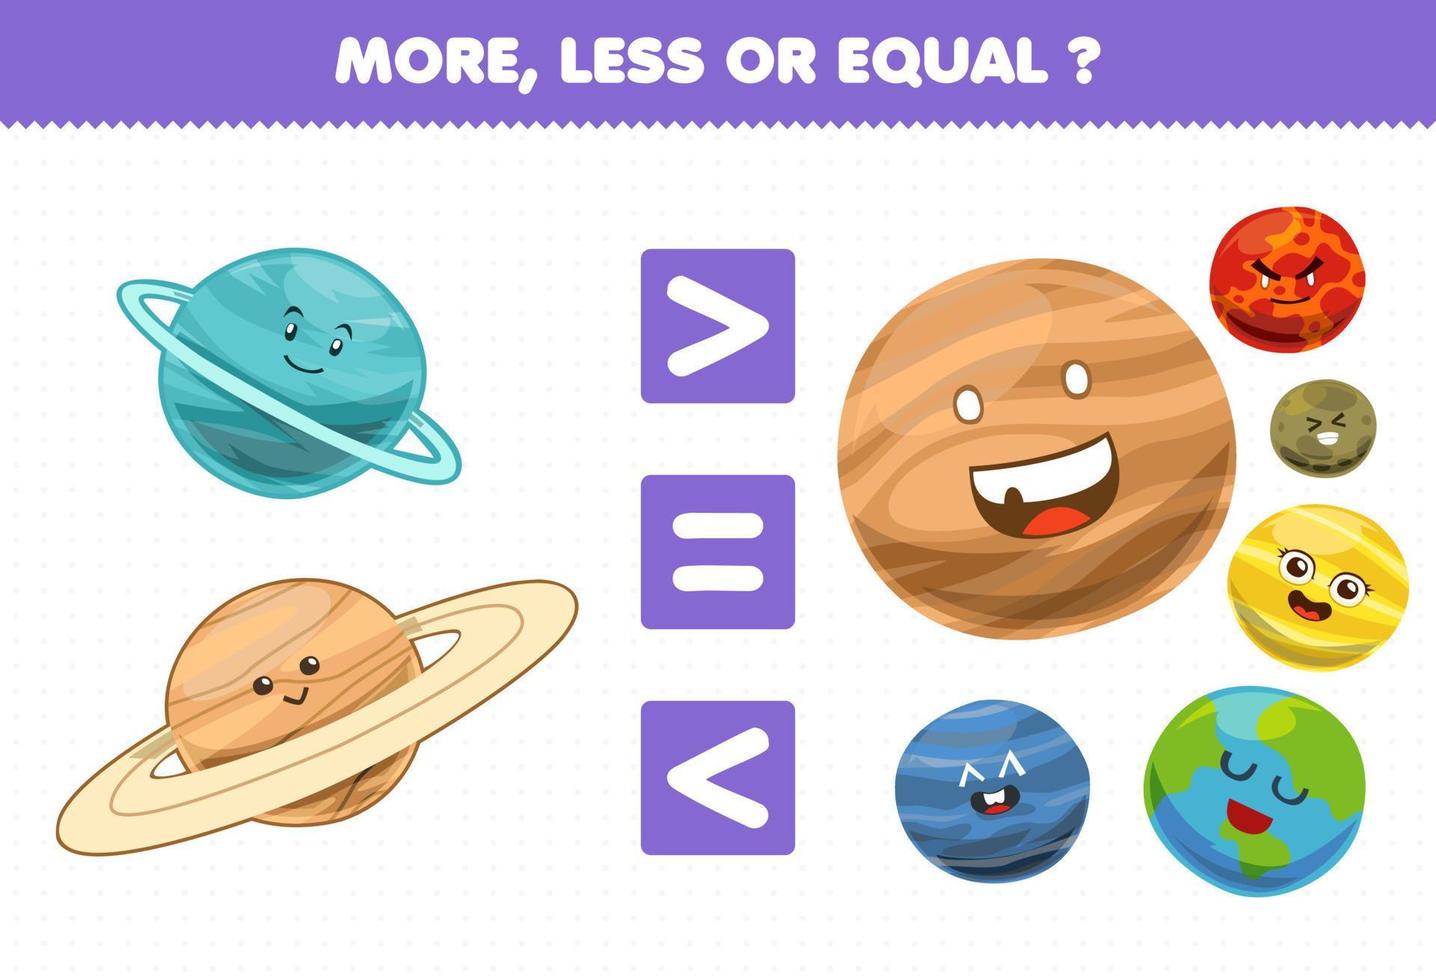 Bildungsspiel für Kinder mehr weniger oder gleich zählen die Menge an niedlichen Cartoon Sonnensystem Planet Uranus Saturn Jupiter Mars Quecksilber Venus Erde Neptun vektor